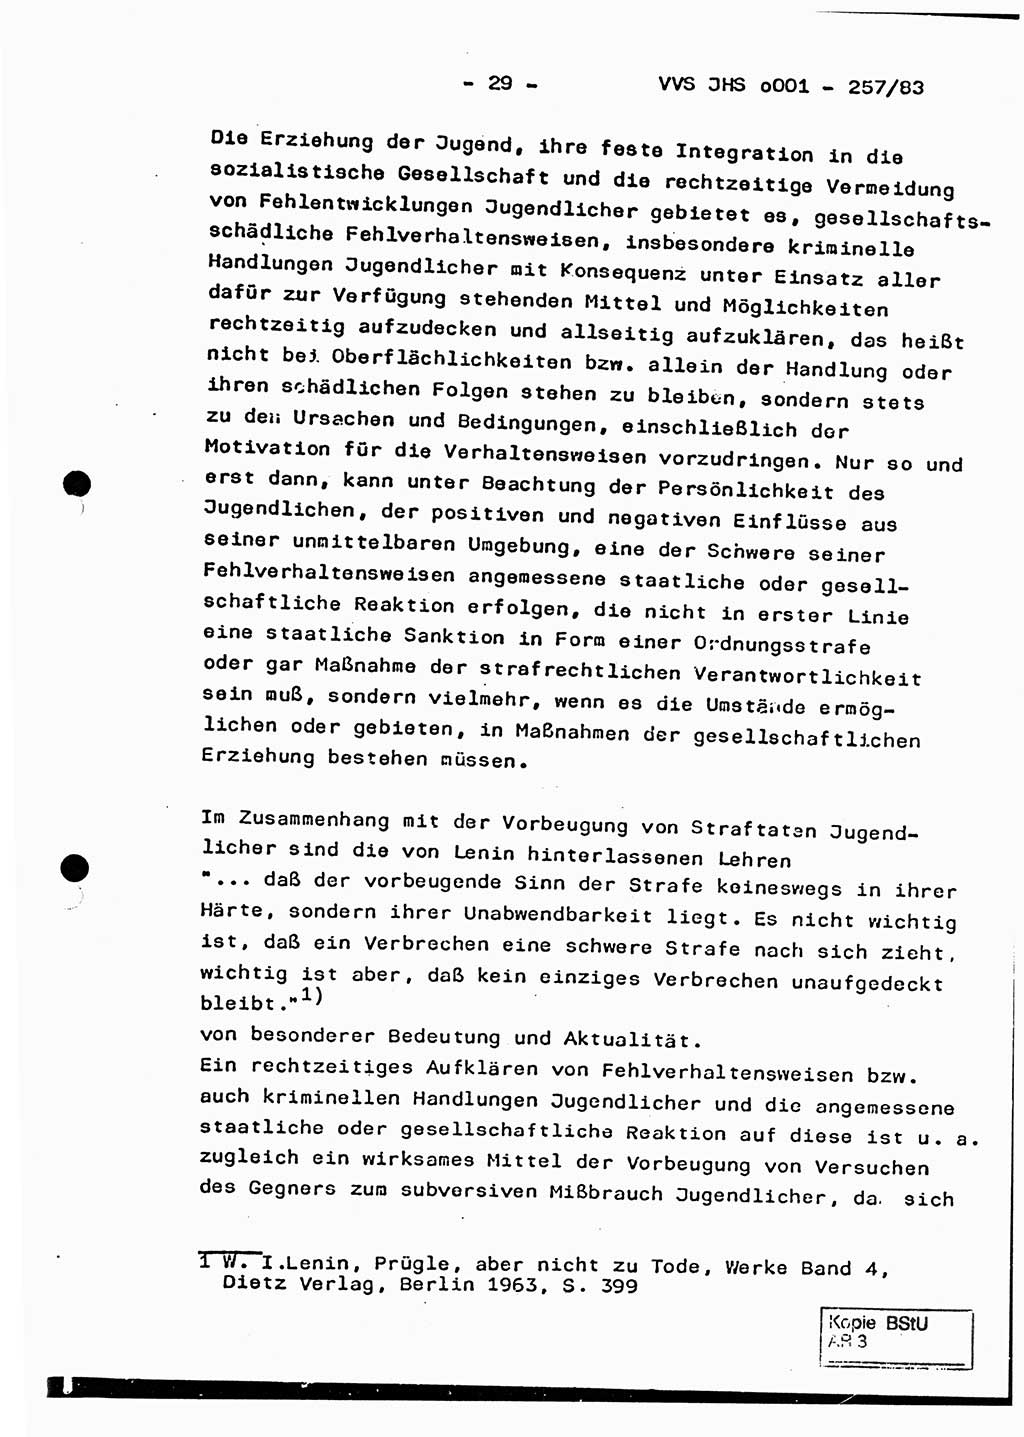 Dissertation, Oberst Helmut Lubas (BV Mdg.), Oberstleutnant Manfred Eschberger (HA IX), Oberleutnant Hans-Jürgen Ludwig (JHS), Ministerium für Staatssicherheit (MfS) [Deutsche Demokratische Republik (DDR)], Juristische Hochschule (JHS), Vertrauliche Verschlußsache (VVS) o001-257/83, Potsdam 1983, Seite 29 (Diss. MfS DDR JHS VVS o001-257/83 1983, S. 29)